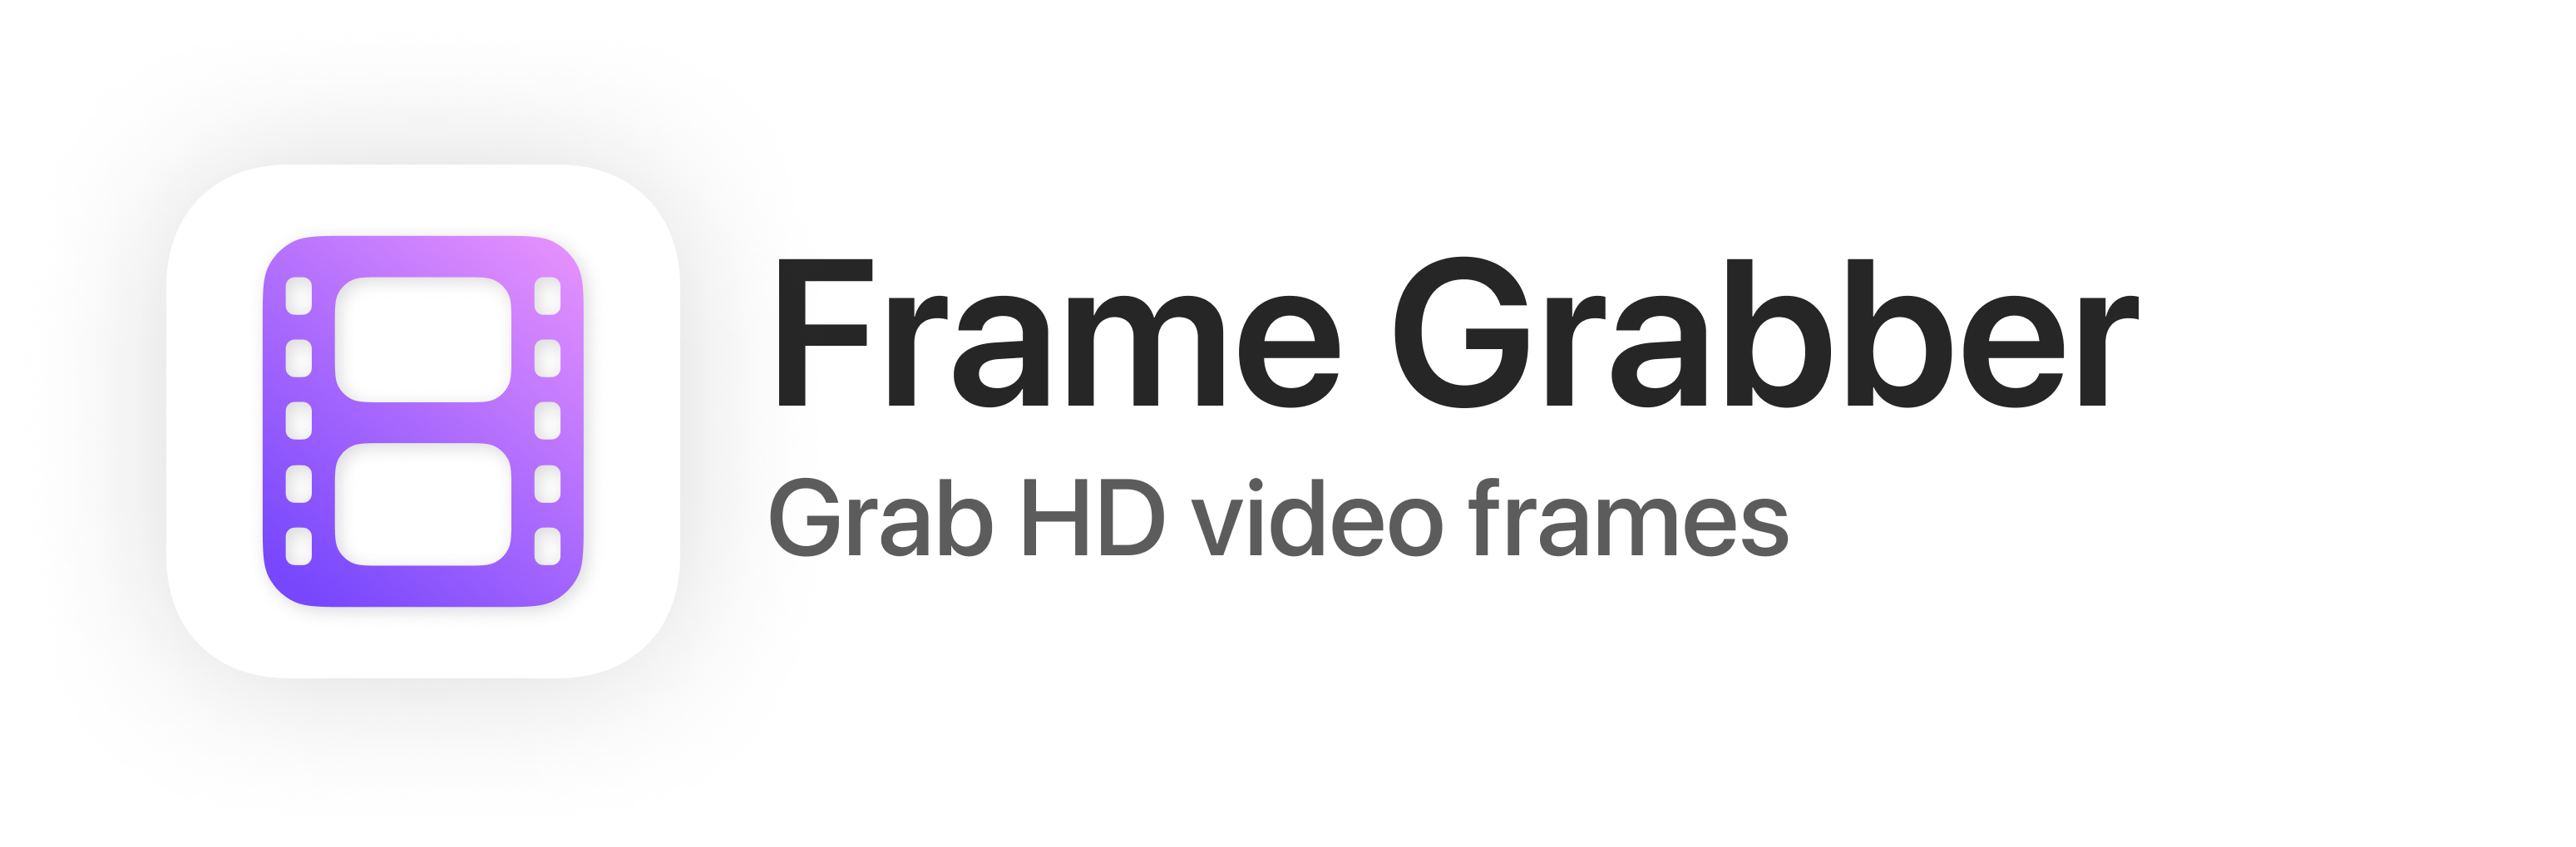 Frame Grabber App Icon